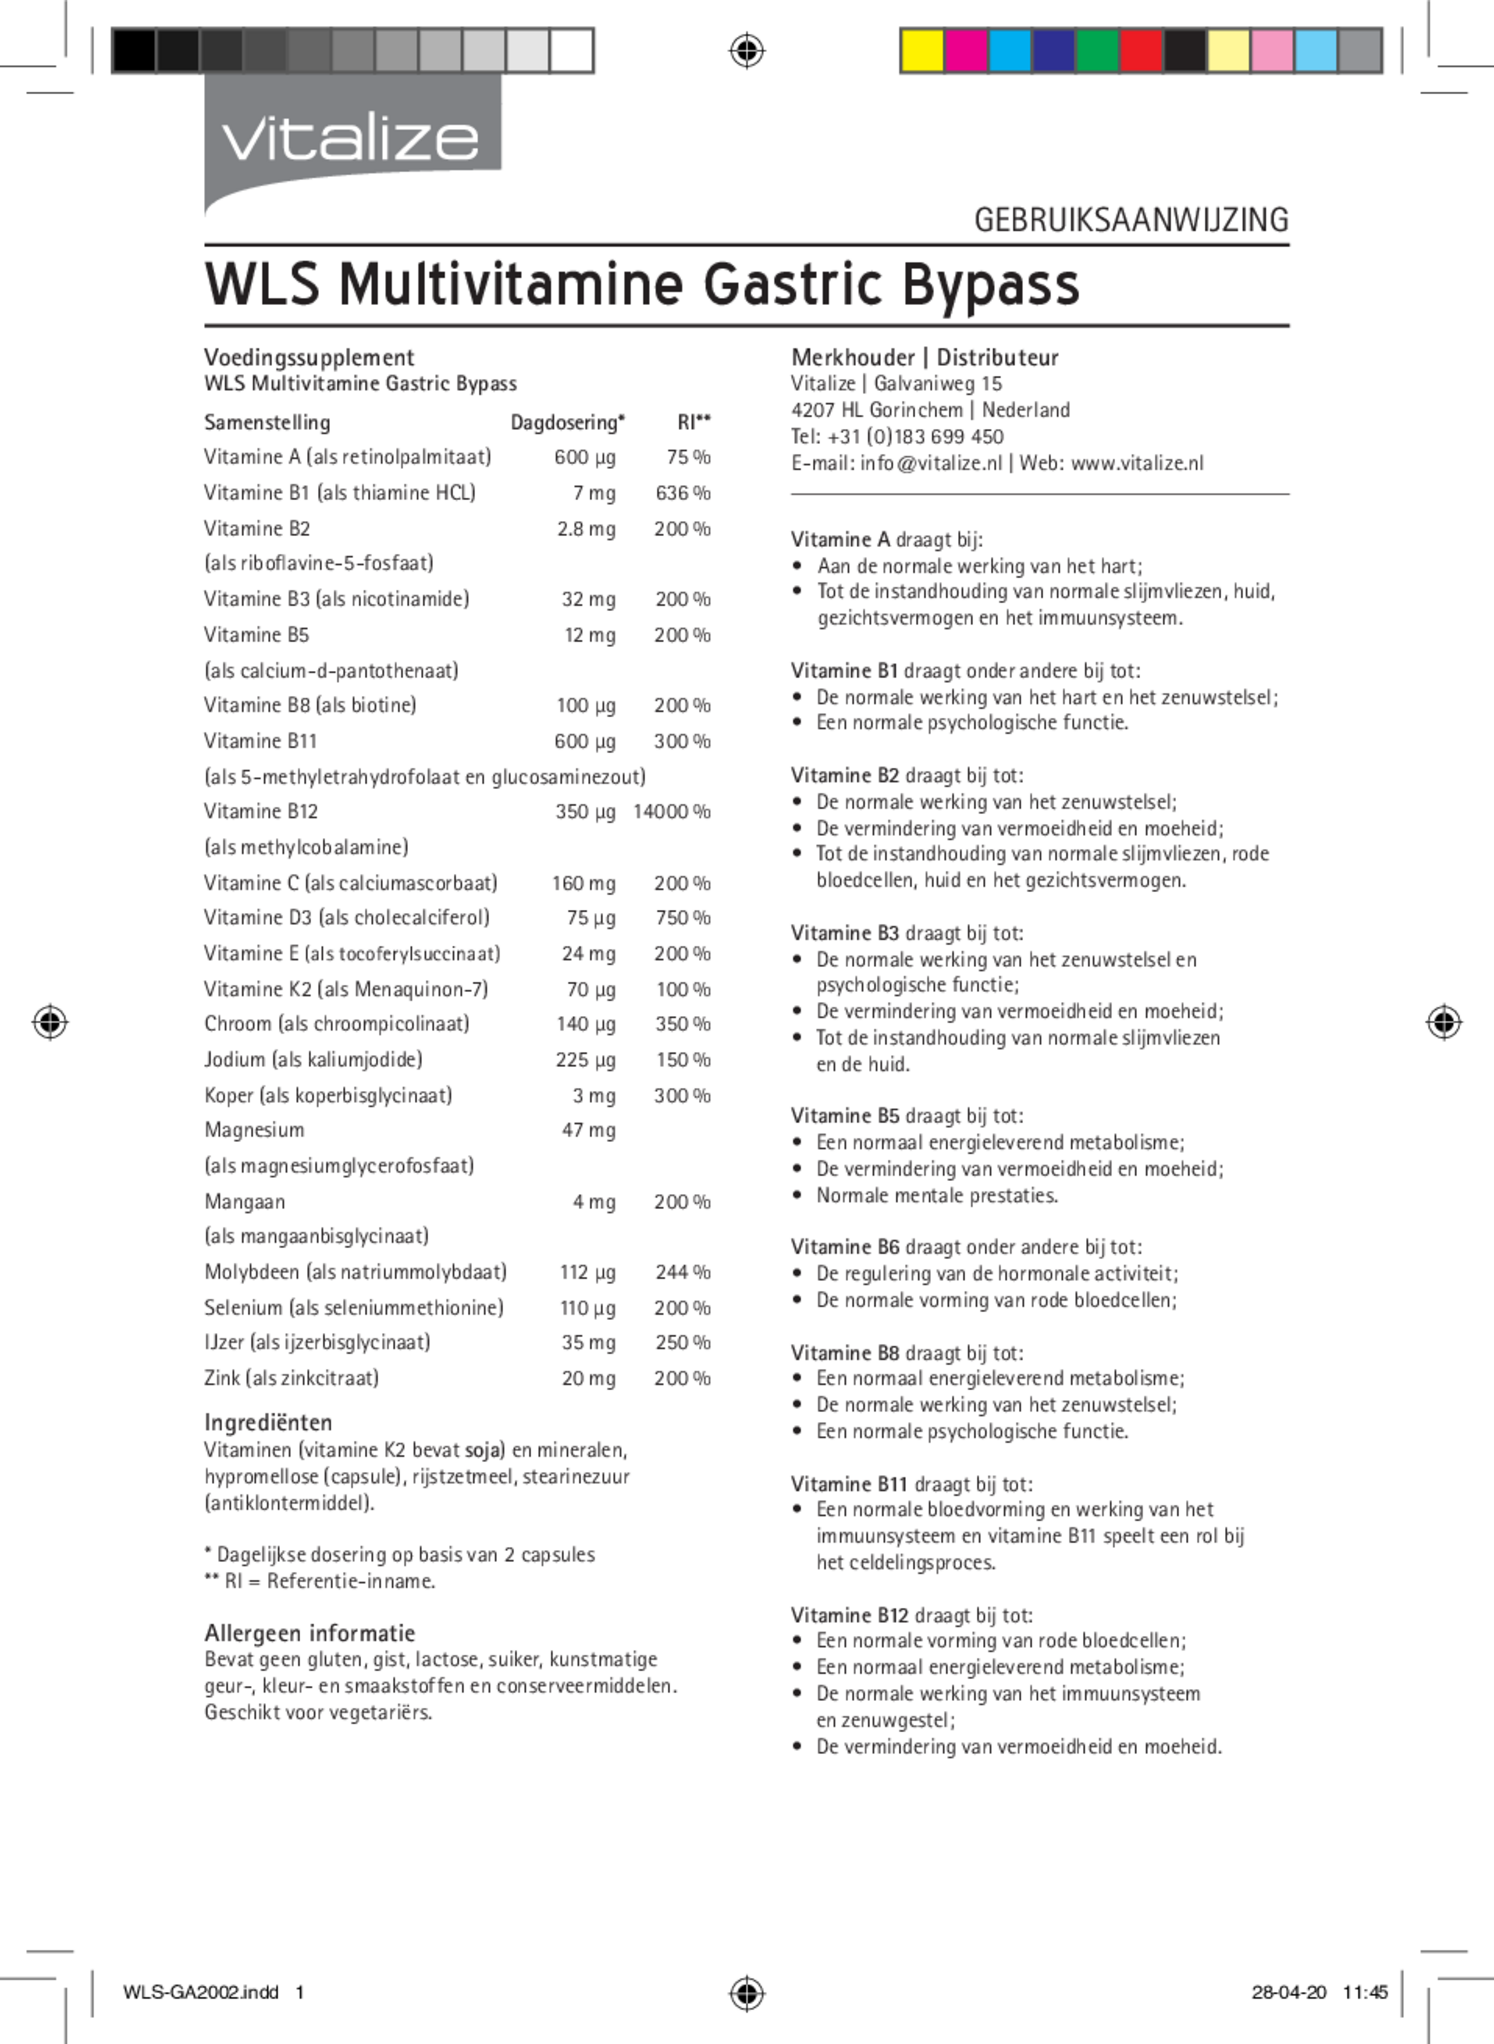 WLS Multivitamine Gastric Bypass afbeelding van document #1, bijsluiter